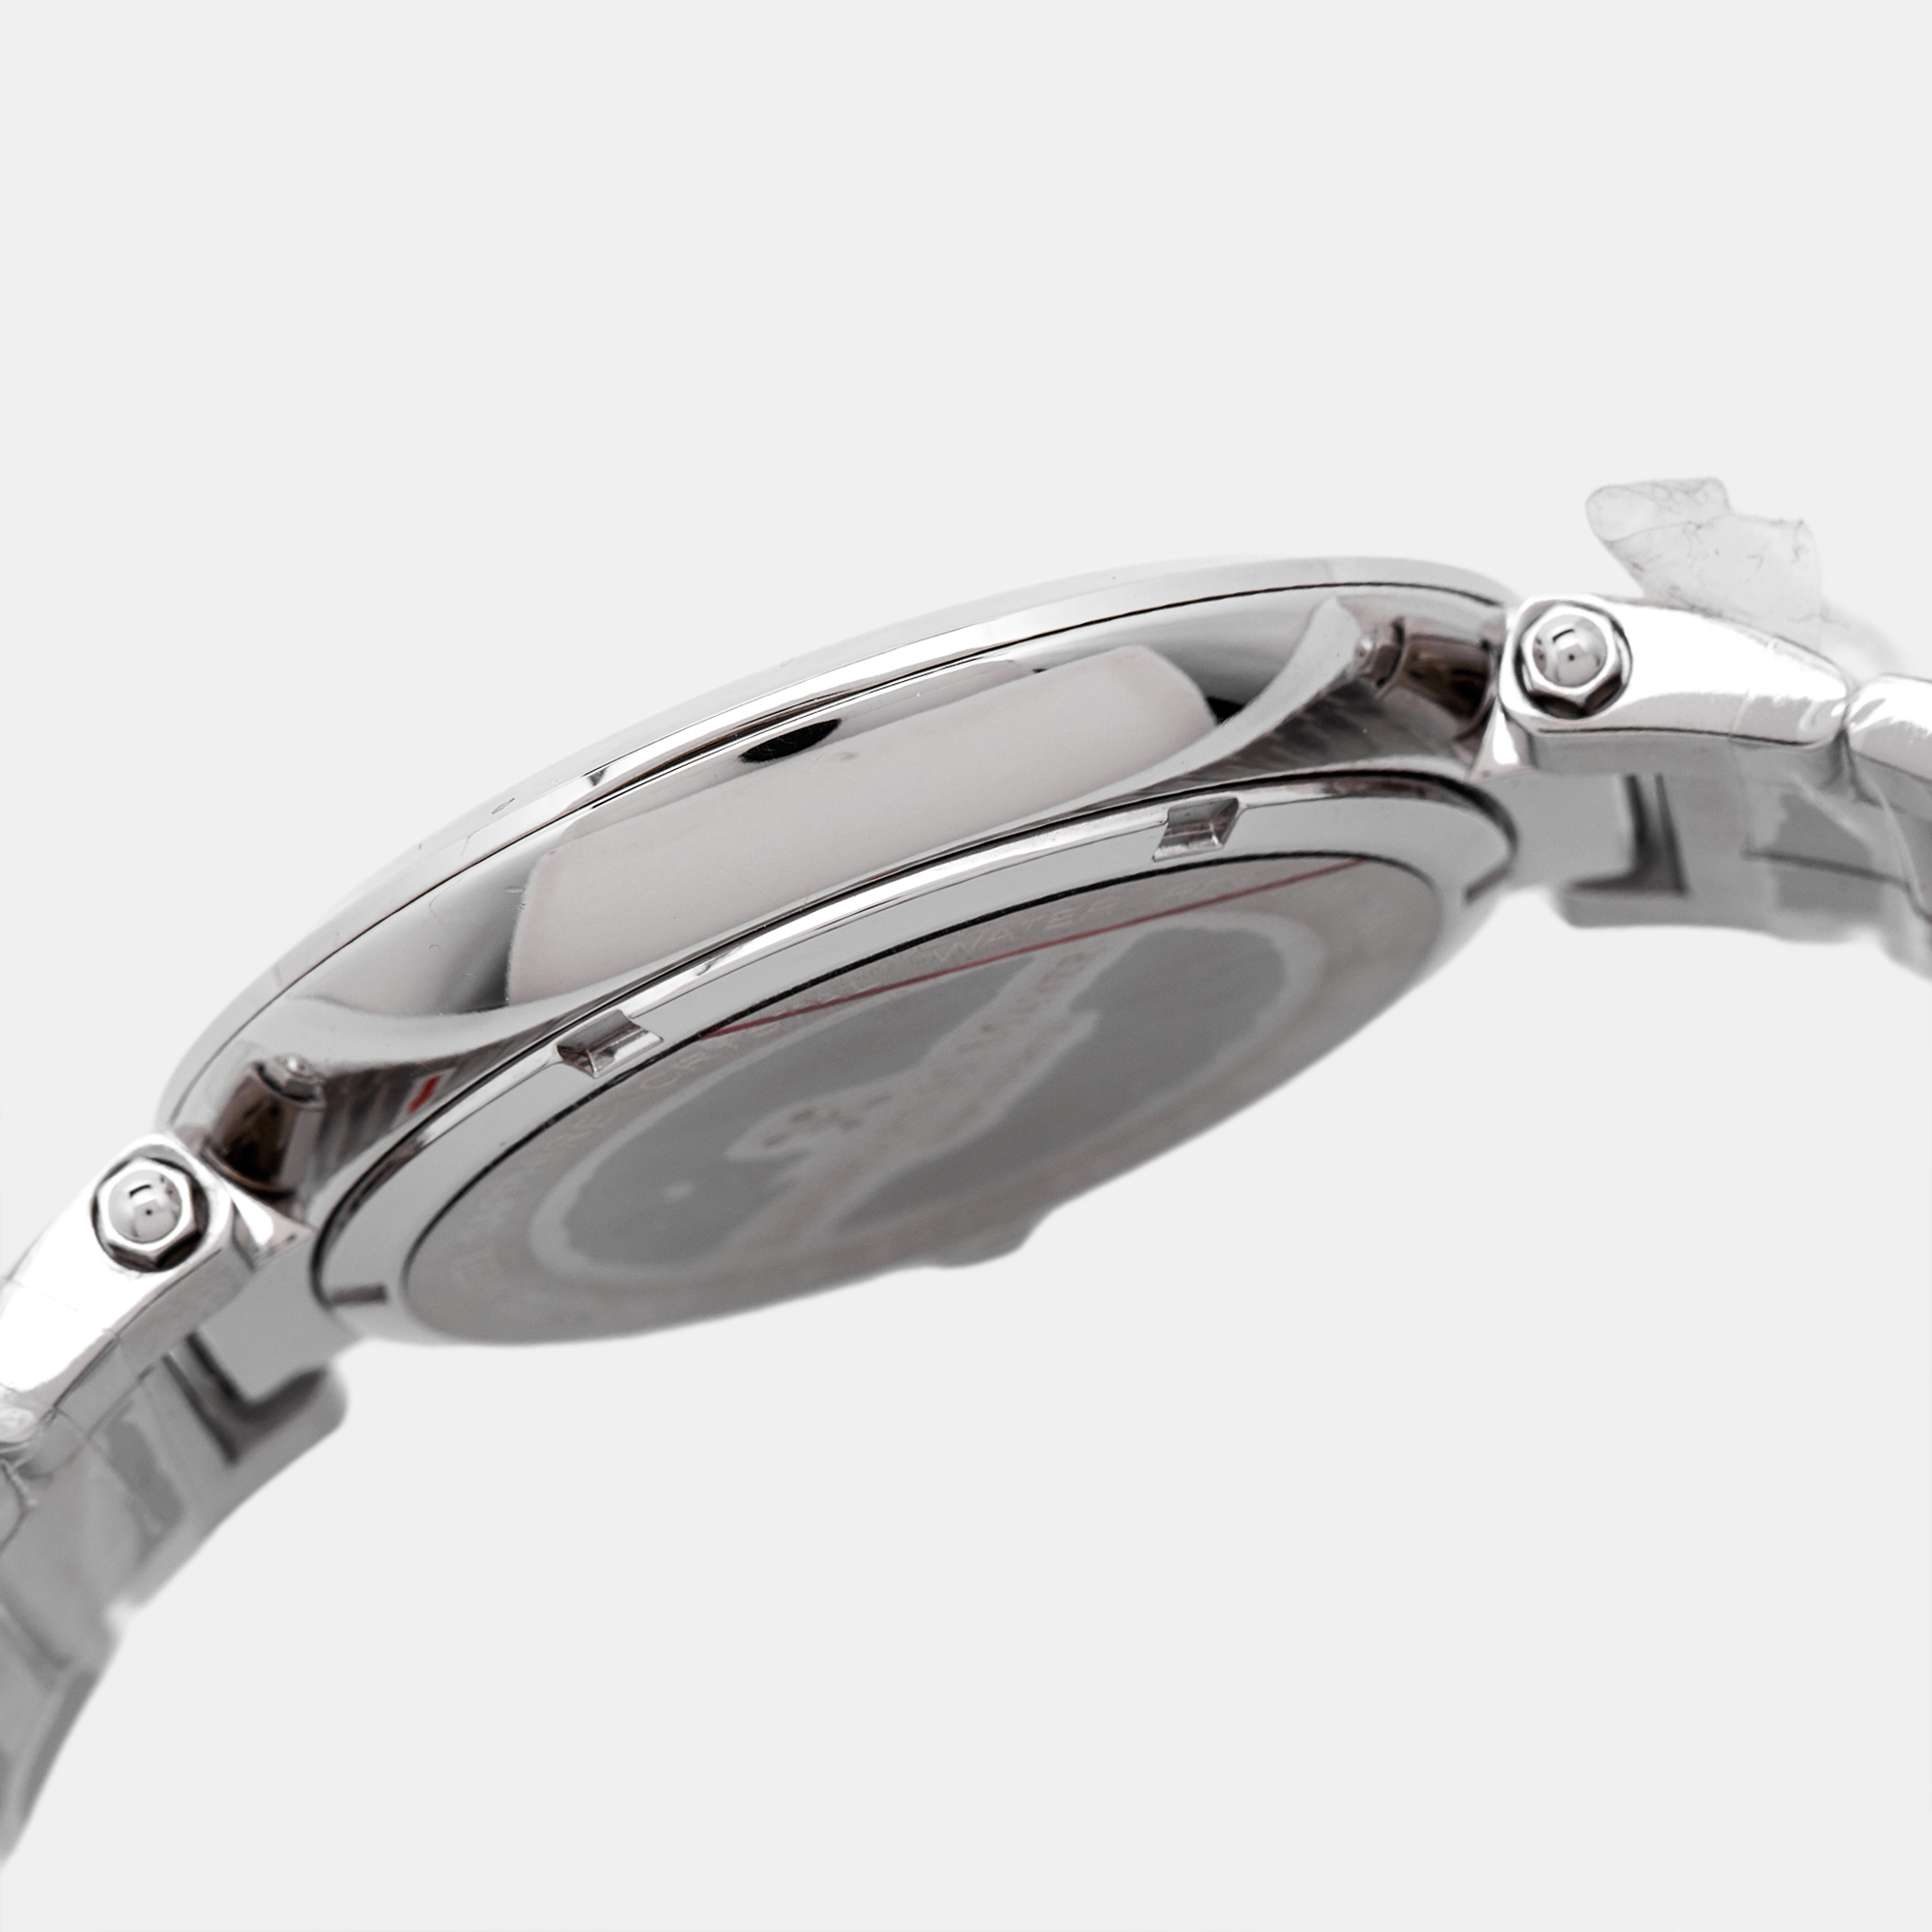 Bernhard H. Mayer Silver Stainless Steel Aurora Women's Wristwatch 40 Mm